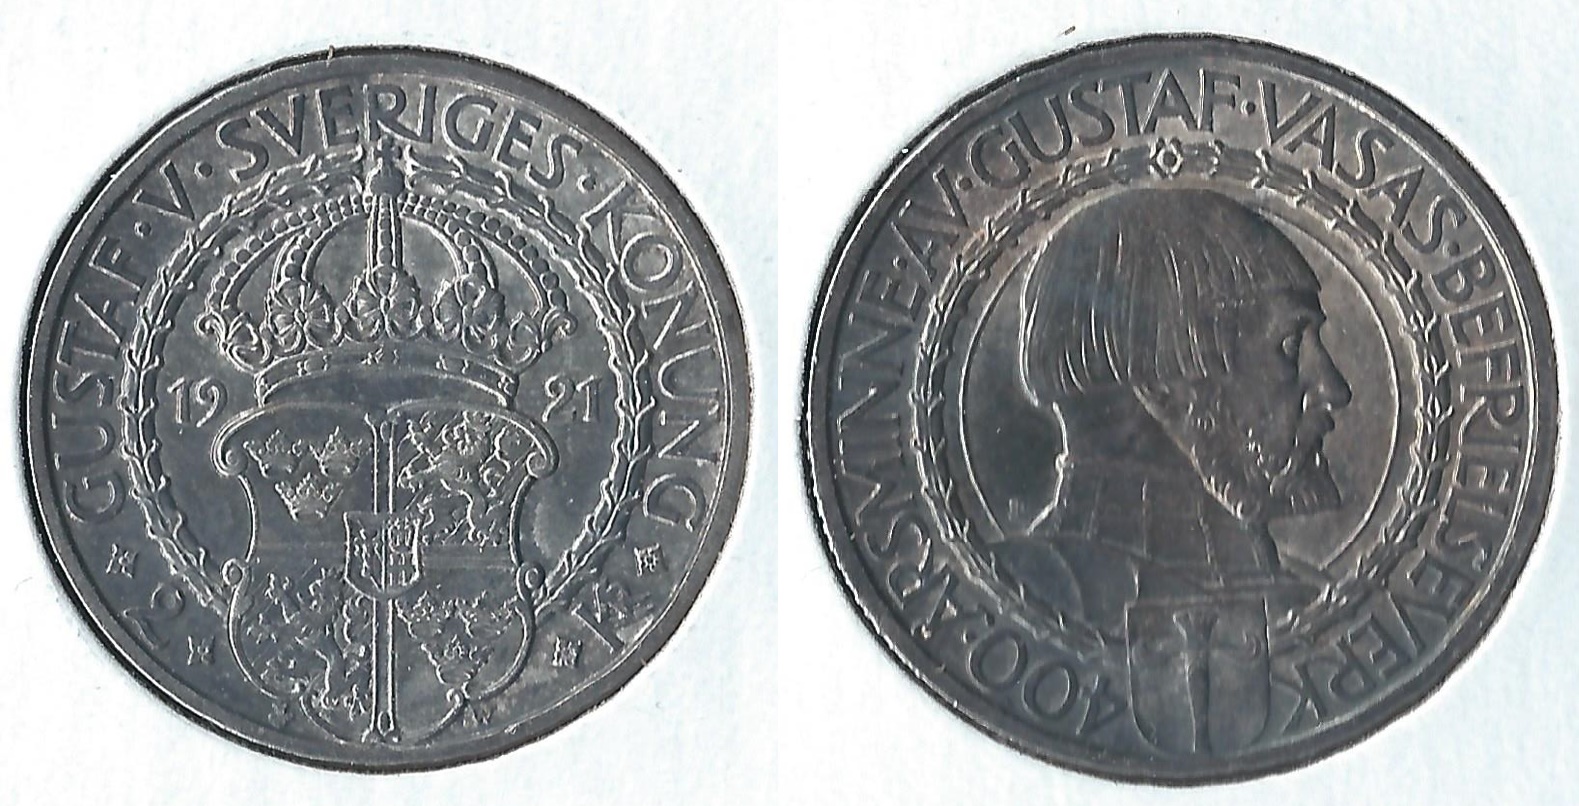 1921 sweden 2 kroner.jpg